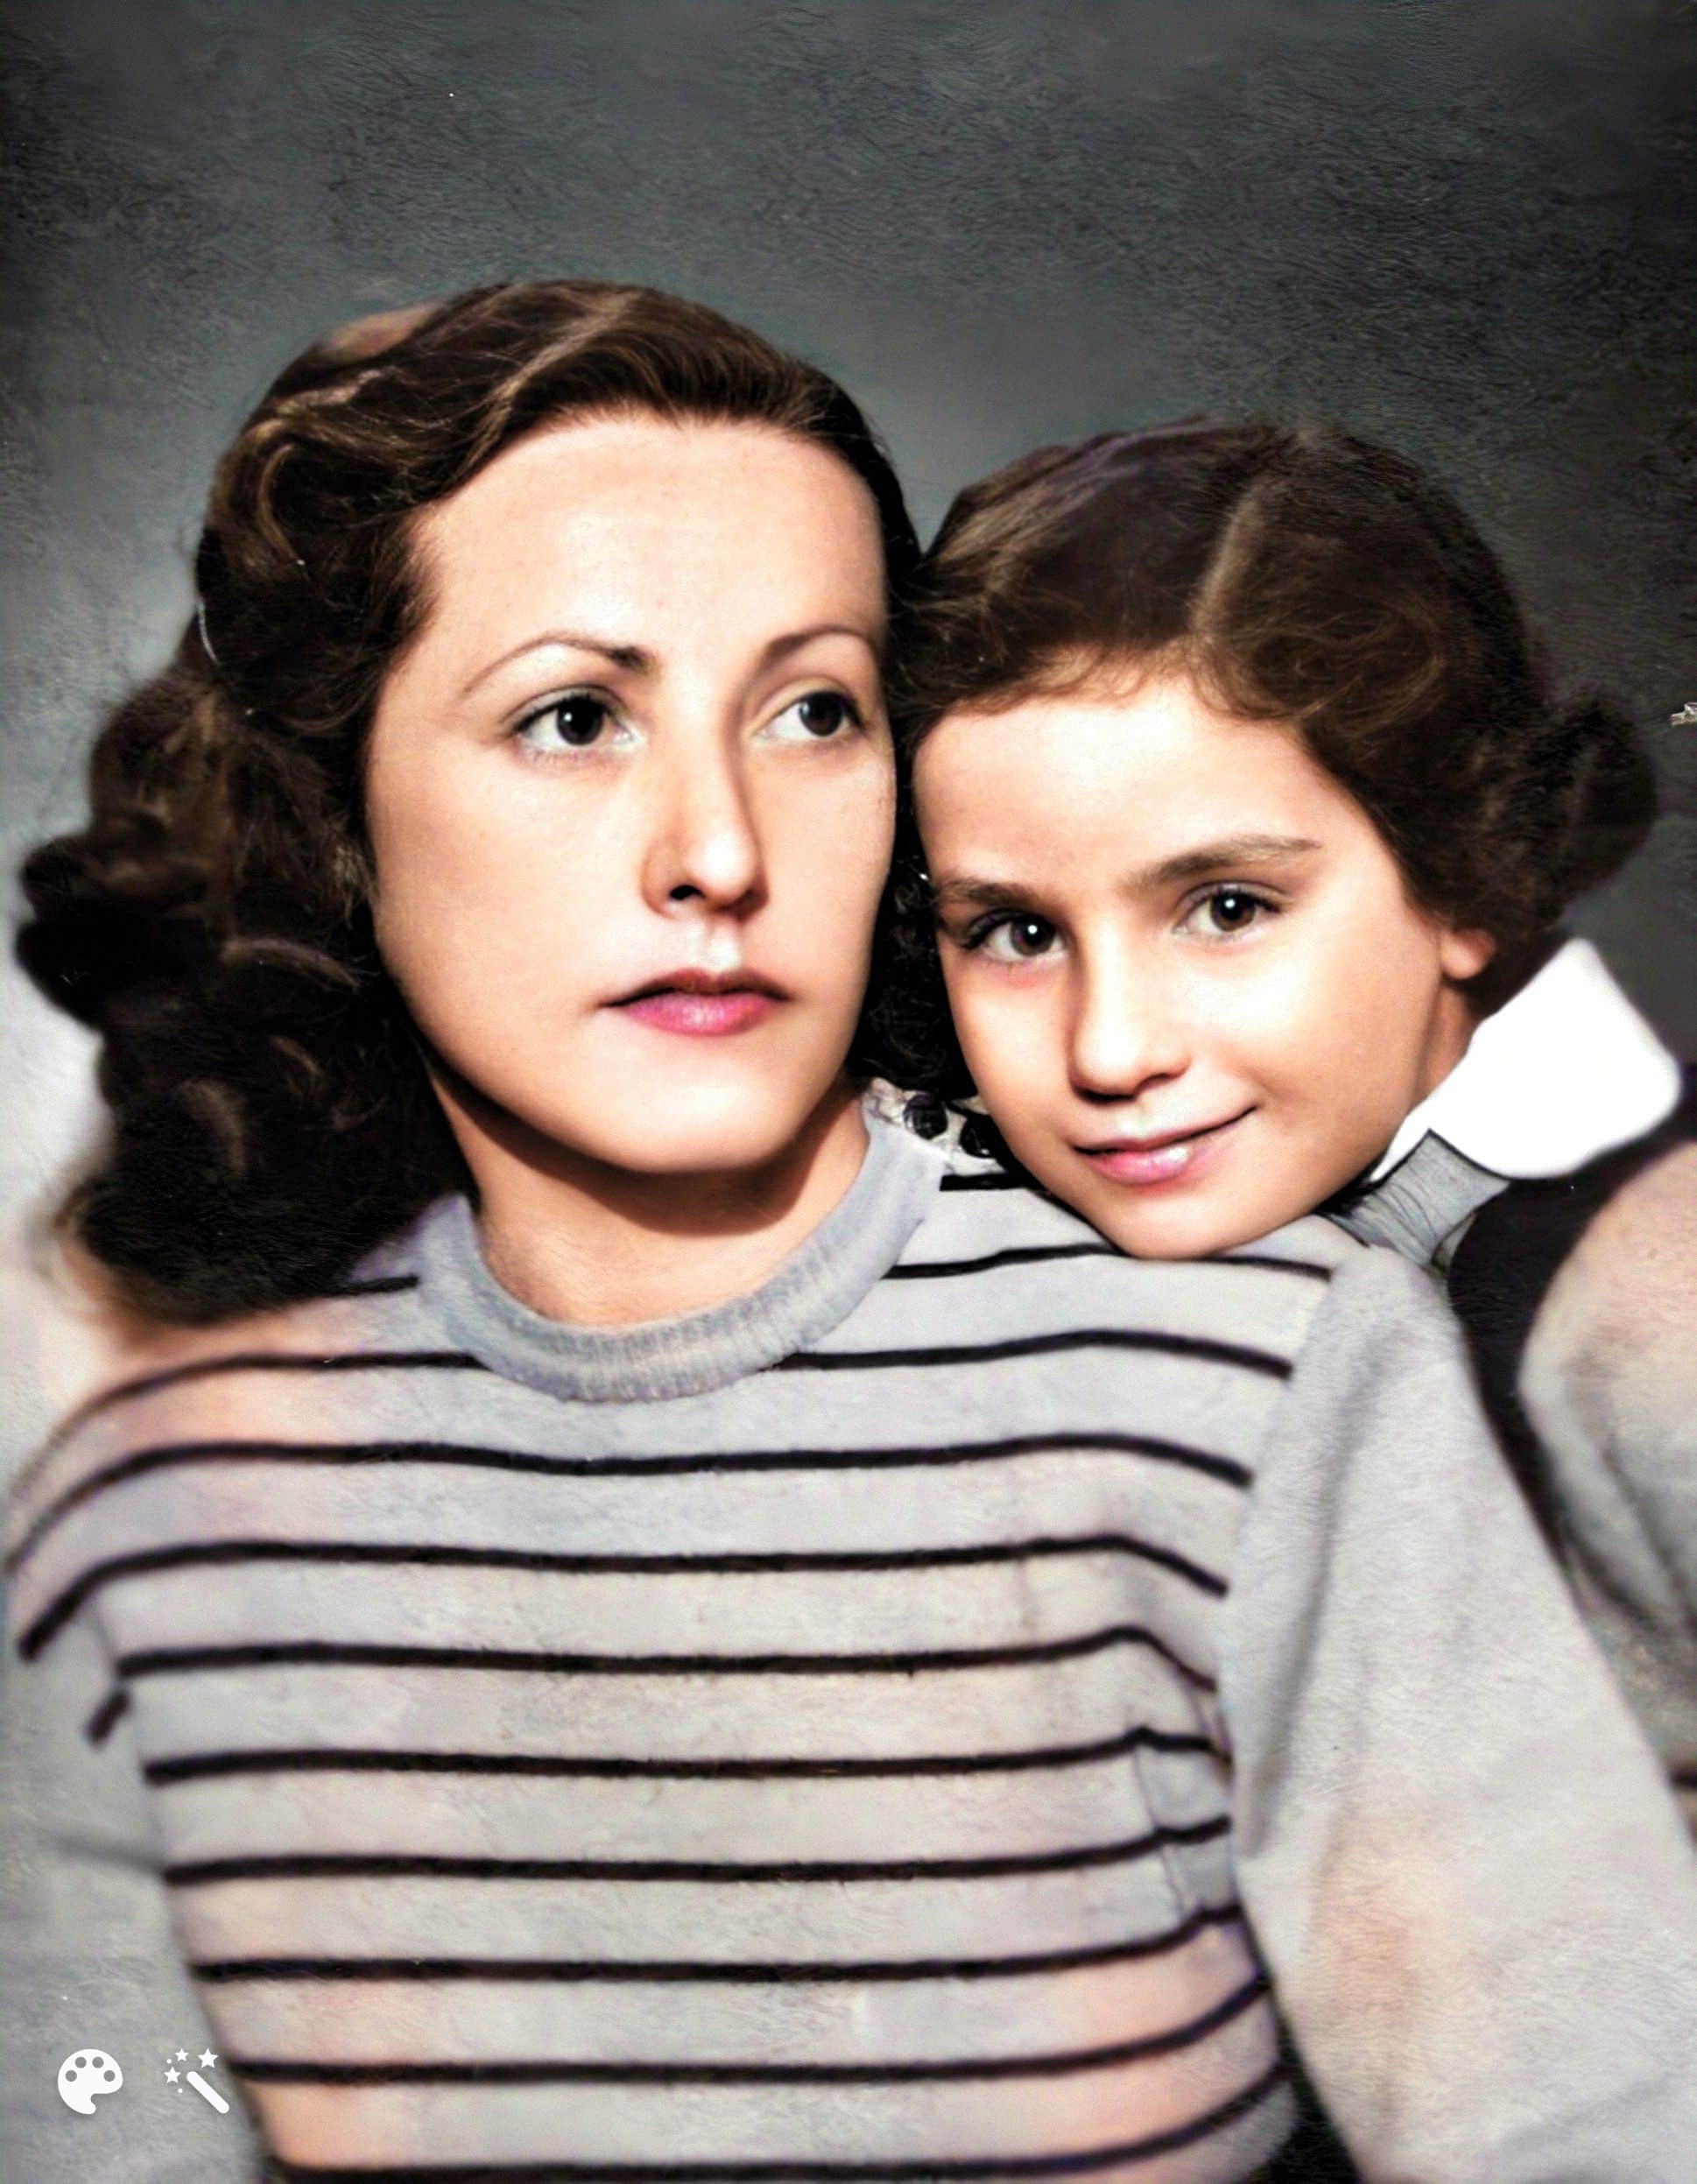 Edith och Alice efter kriget. Fotot förbättrat och färglagt av MyHeritage